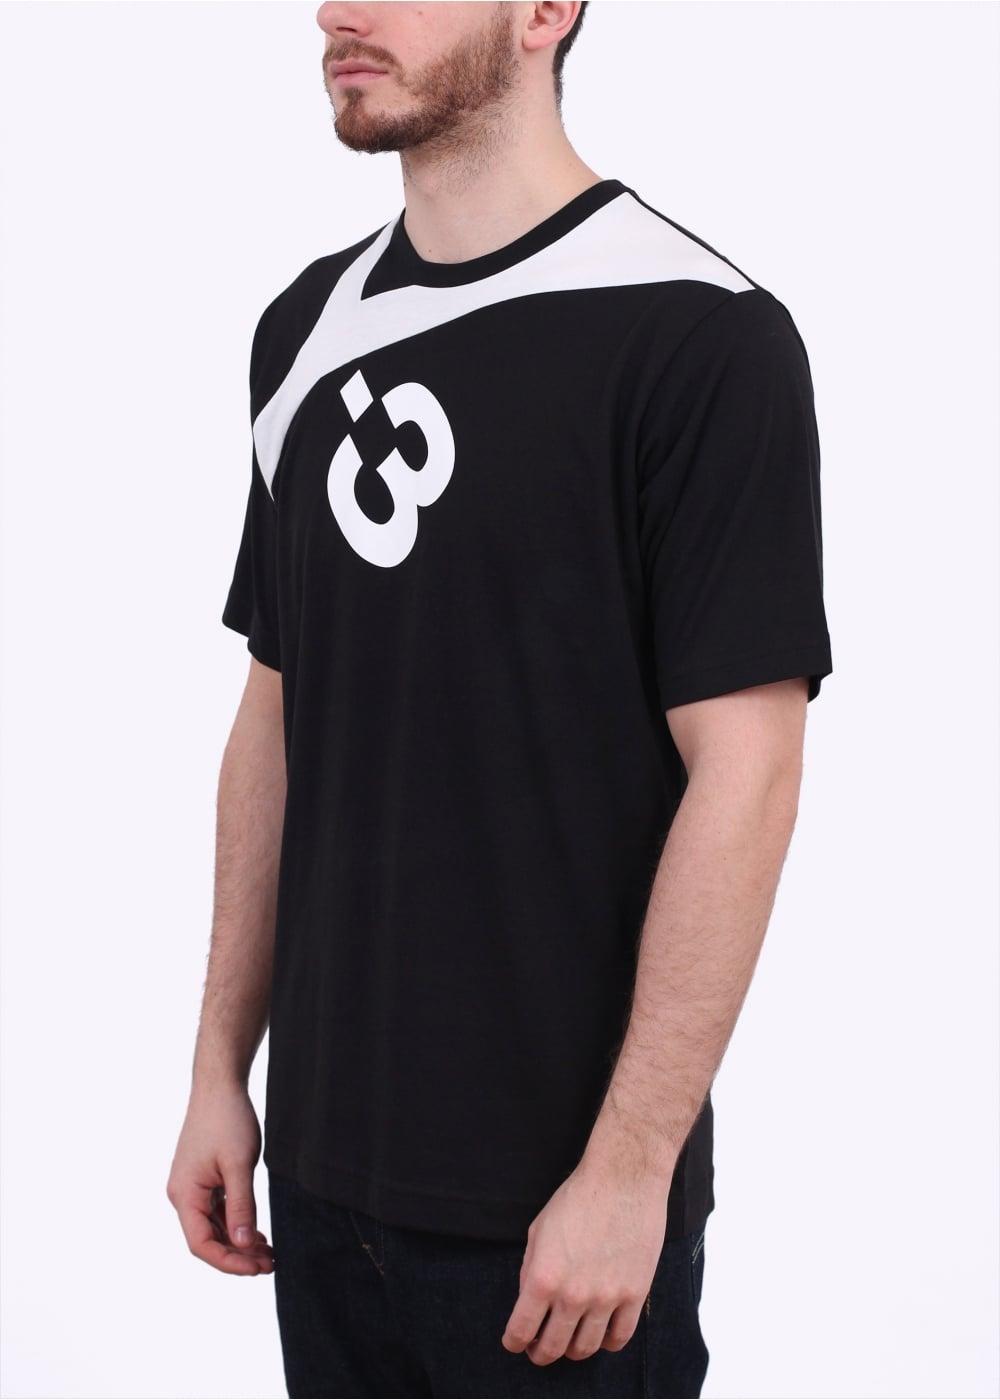 Black and White Y Logo - adidas Y-3 Logo T-Shirt - Black/White